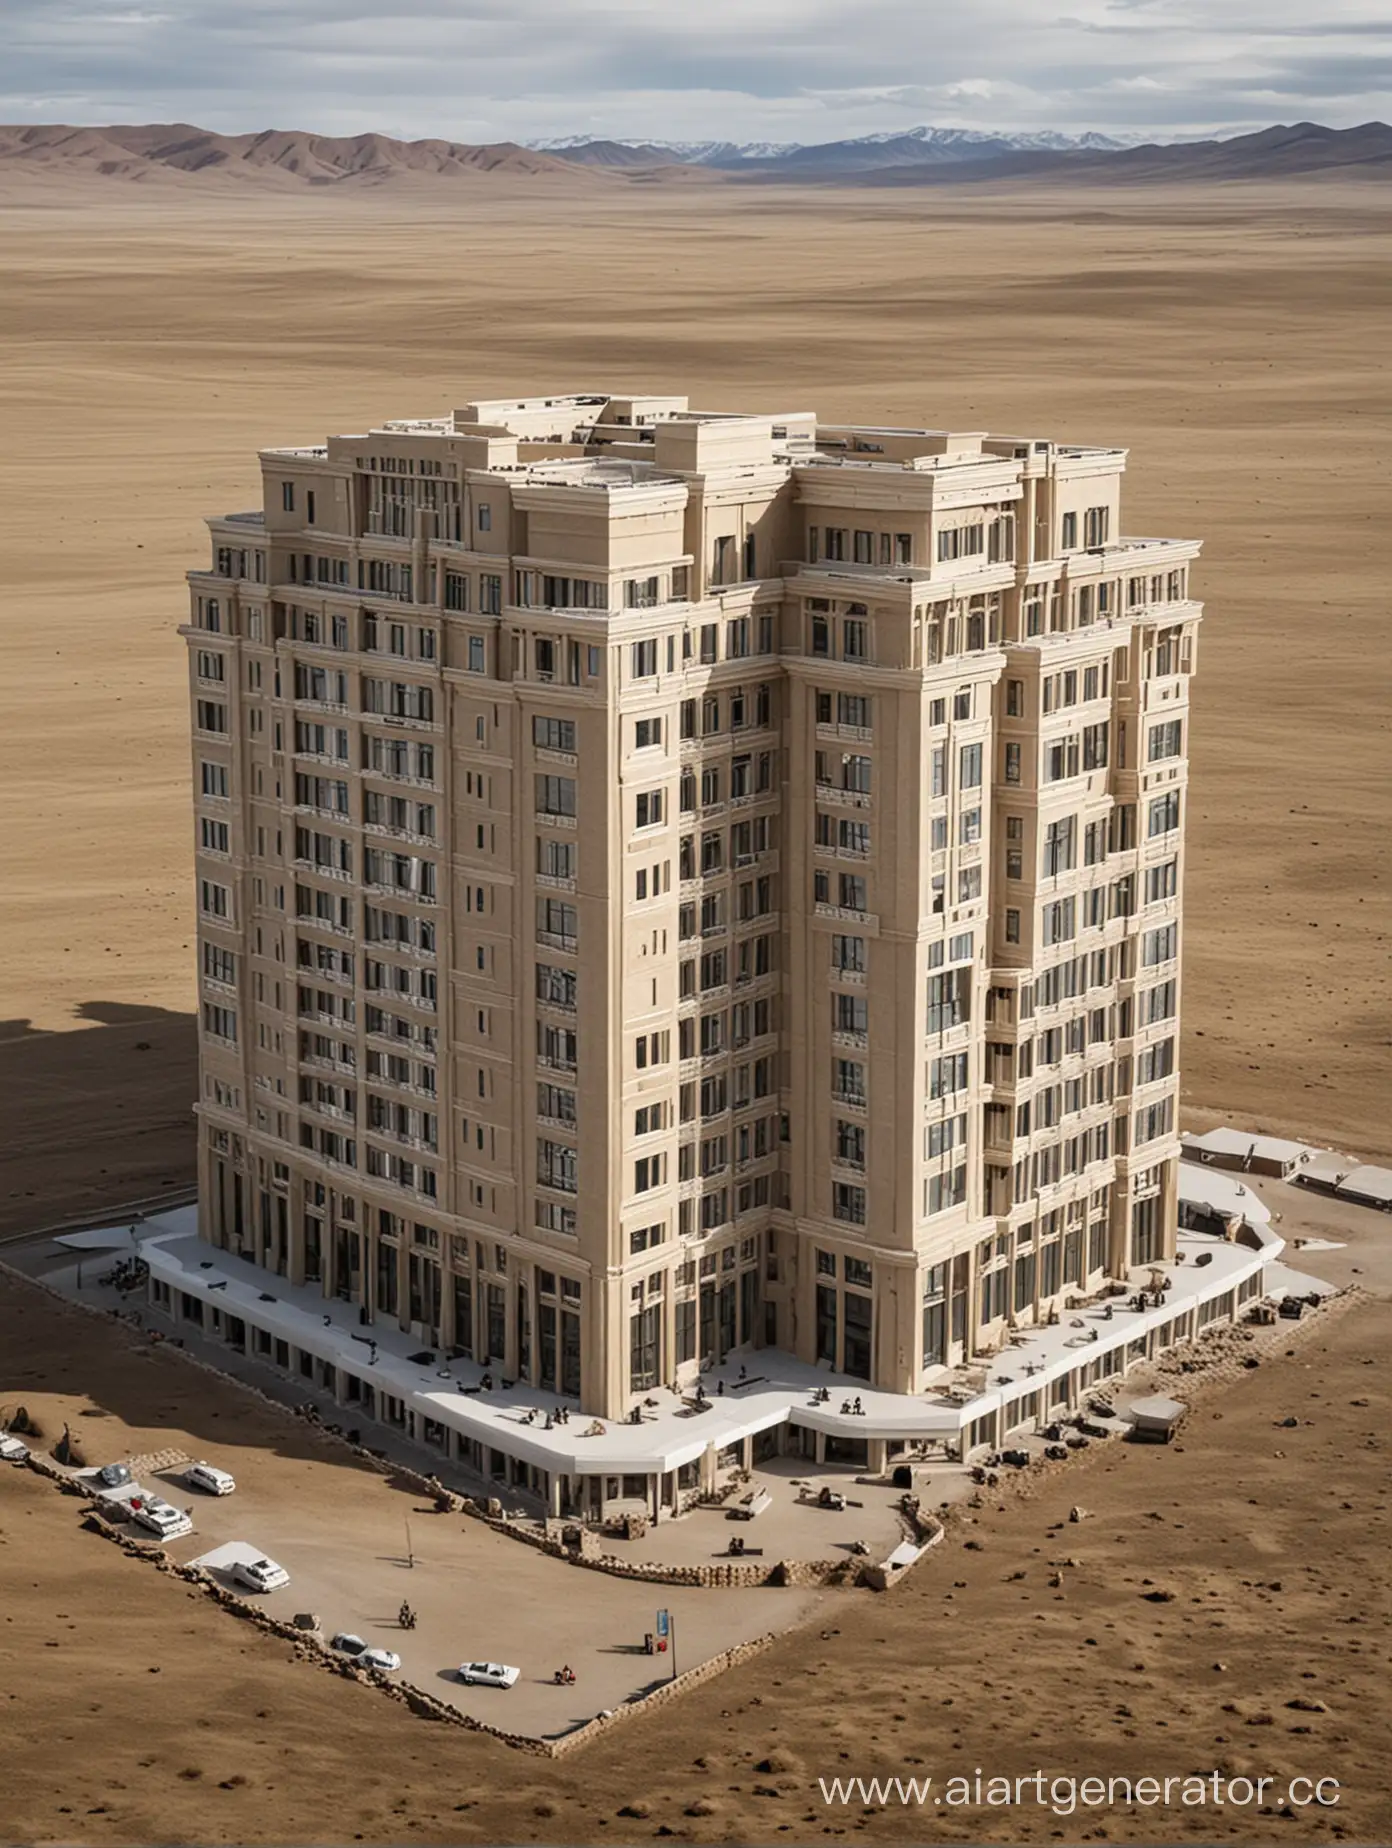 Сделай раскошный 4 этажный отель в Монголии. Этот отель имеет название "SSA"
